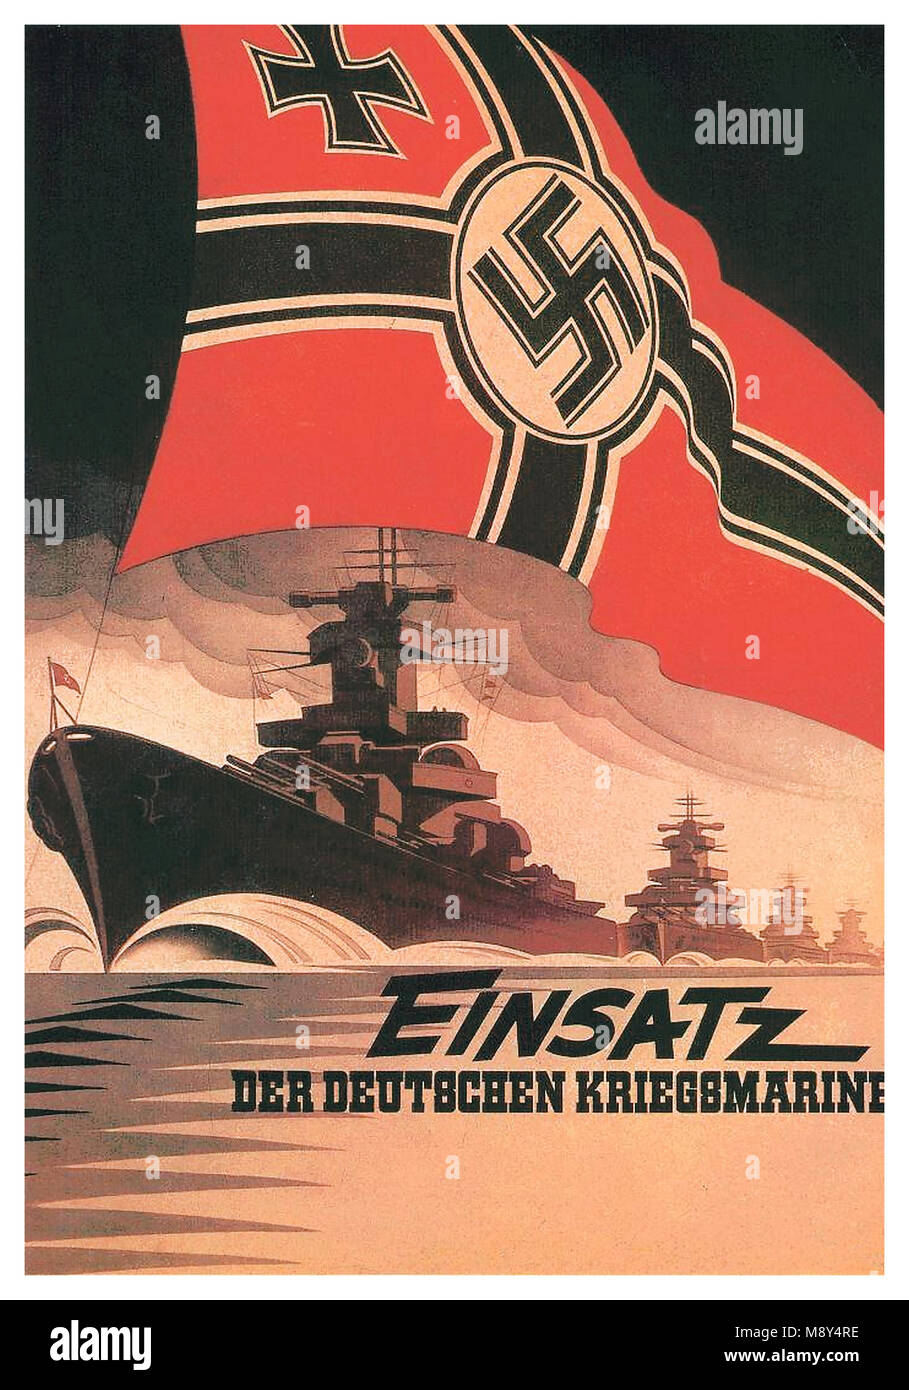 1942 Vintage propaganda tedesca Poster WW2 Kriegsmarine marina militare tedesca pocket battleships impegnati in una missione di battaglia battenti la Marina Militare Tedesca svastica bandiera Foto Stock